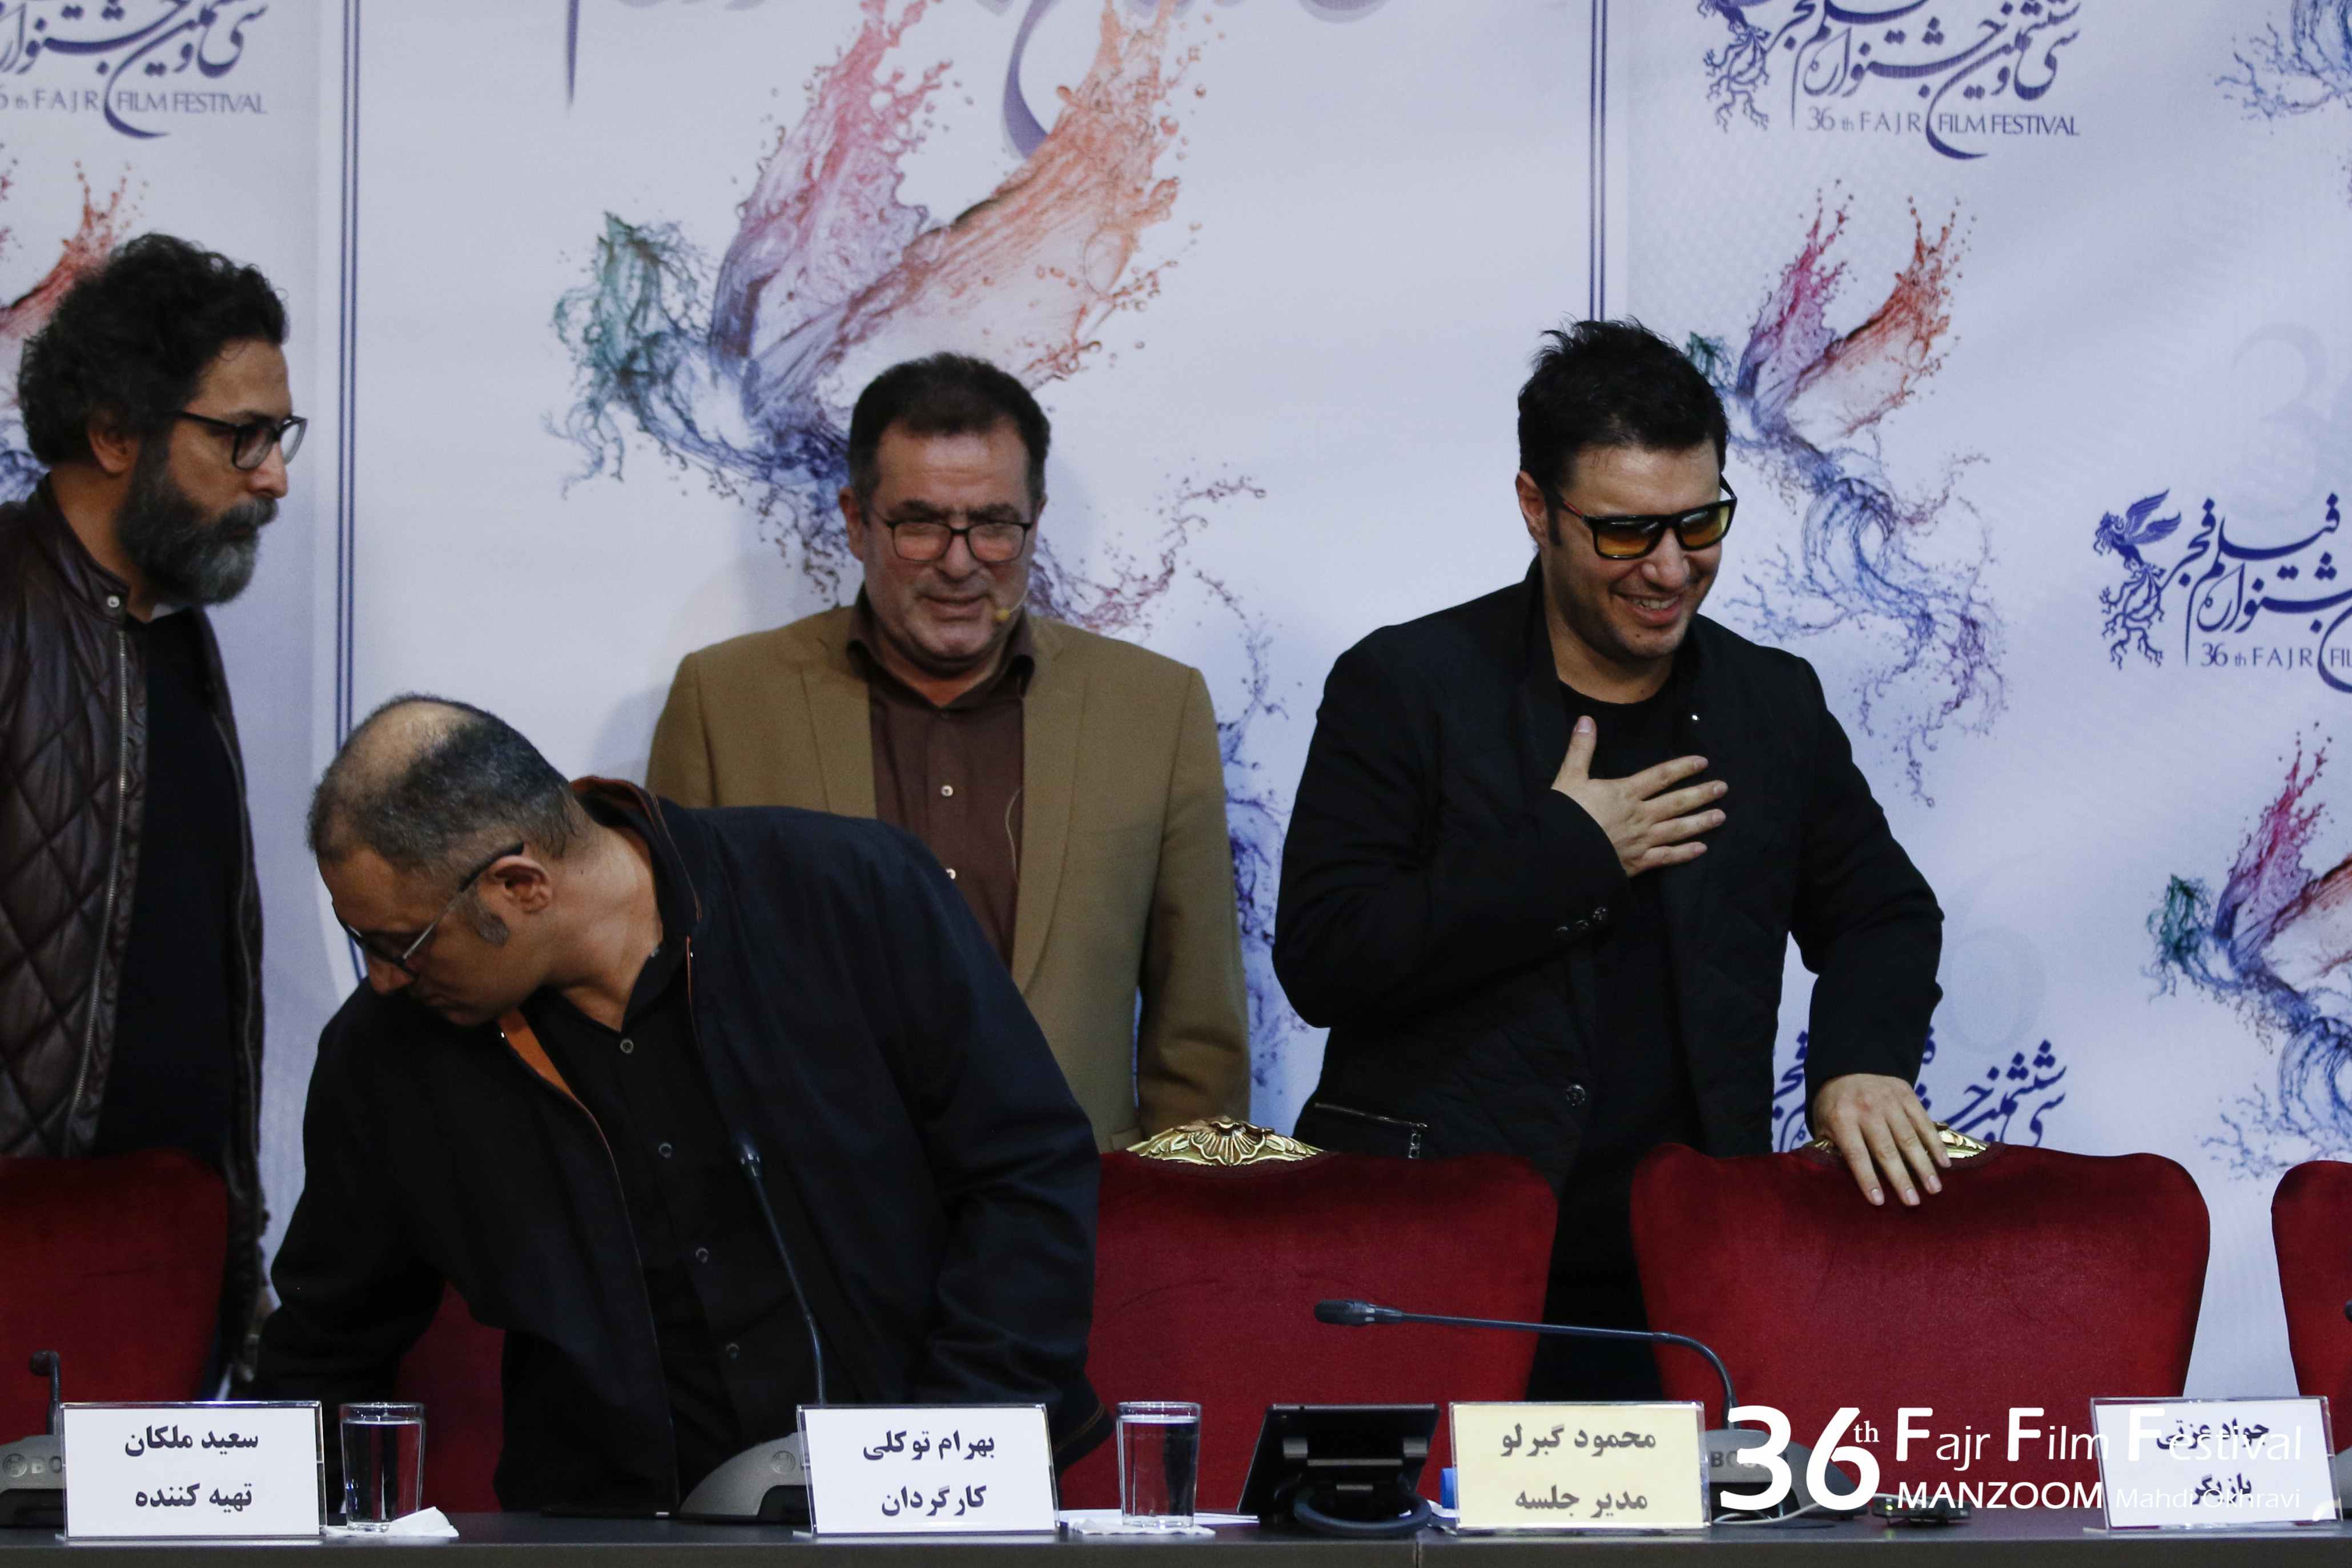 نشست خبری فیلم سینمایی تنگه ابوقریب با حضور سعید ملکان، بهرام توکلی، جواد عزتی و محمود گبرلو